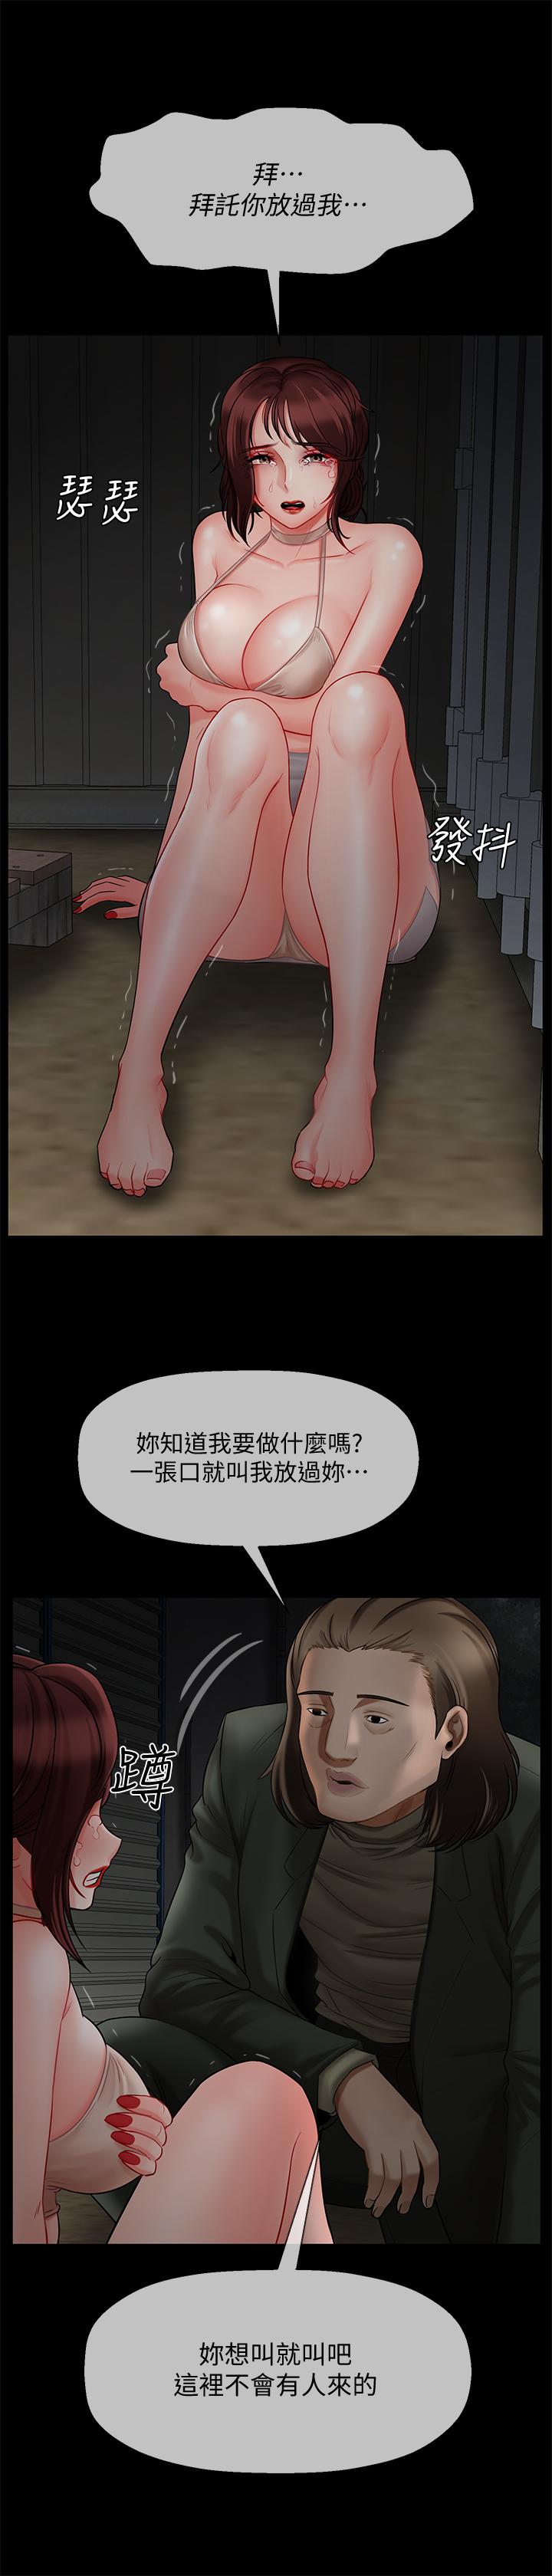 坏老师  第10话-绑架事迹败露 漫画图片3.jpg